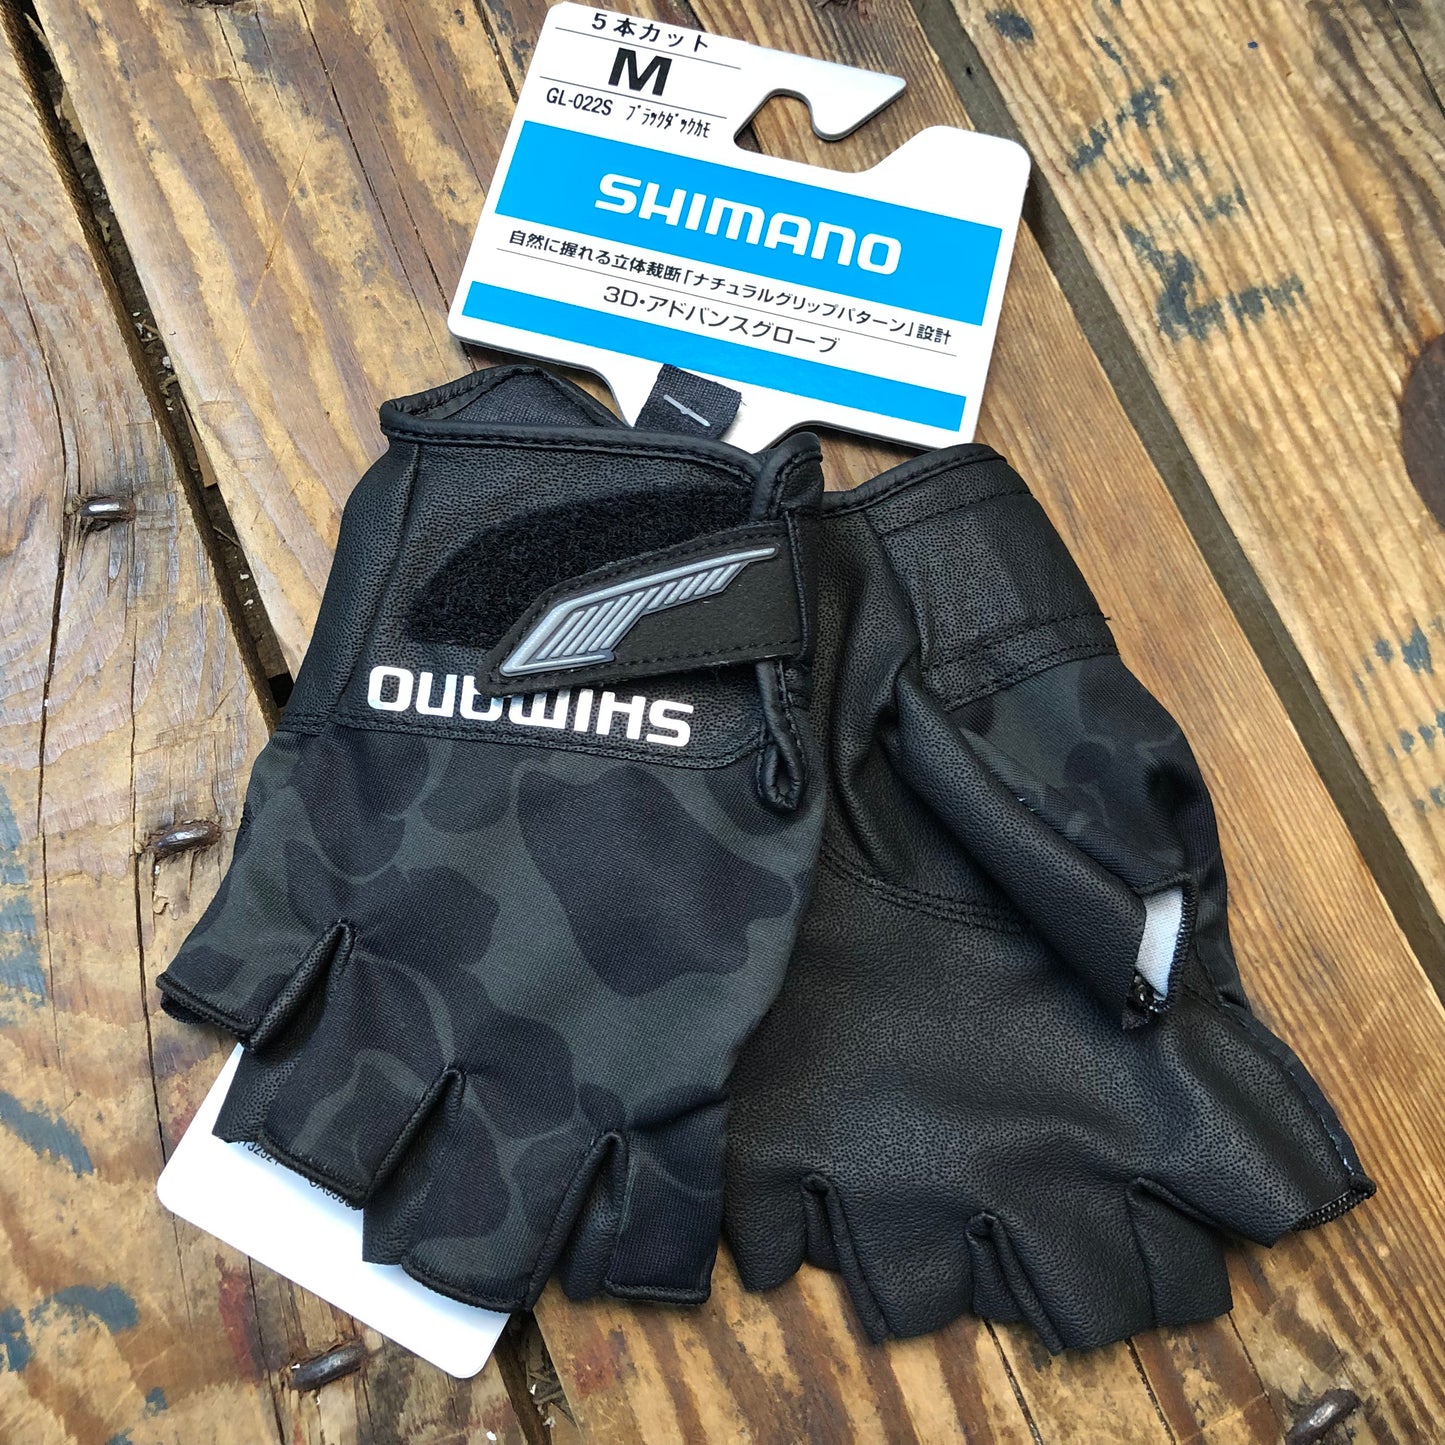 GL-022S 3D Advance Glove